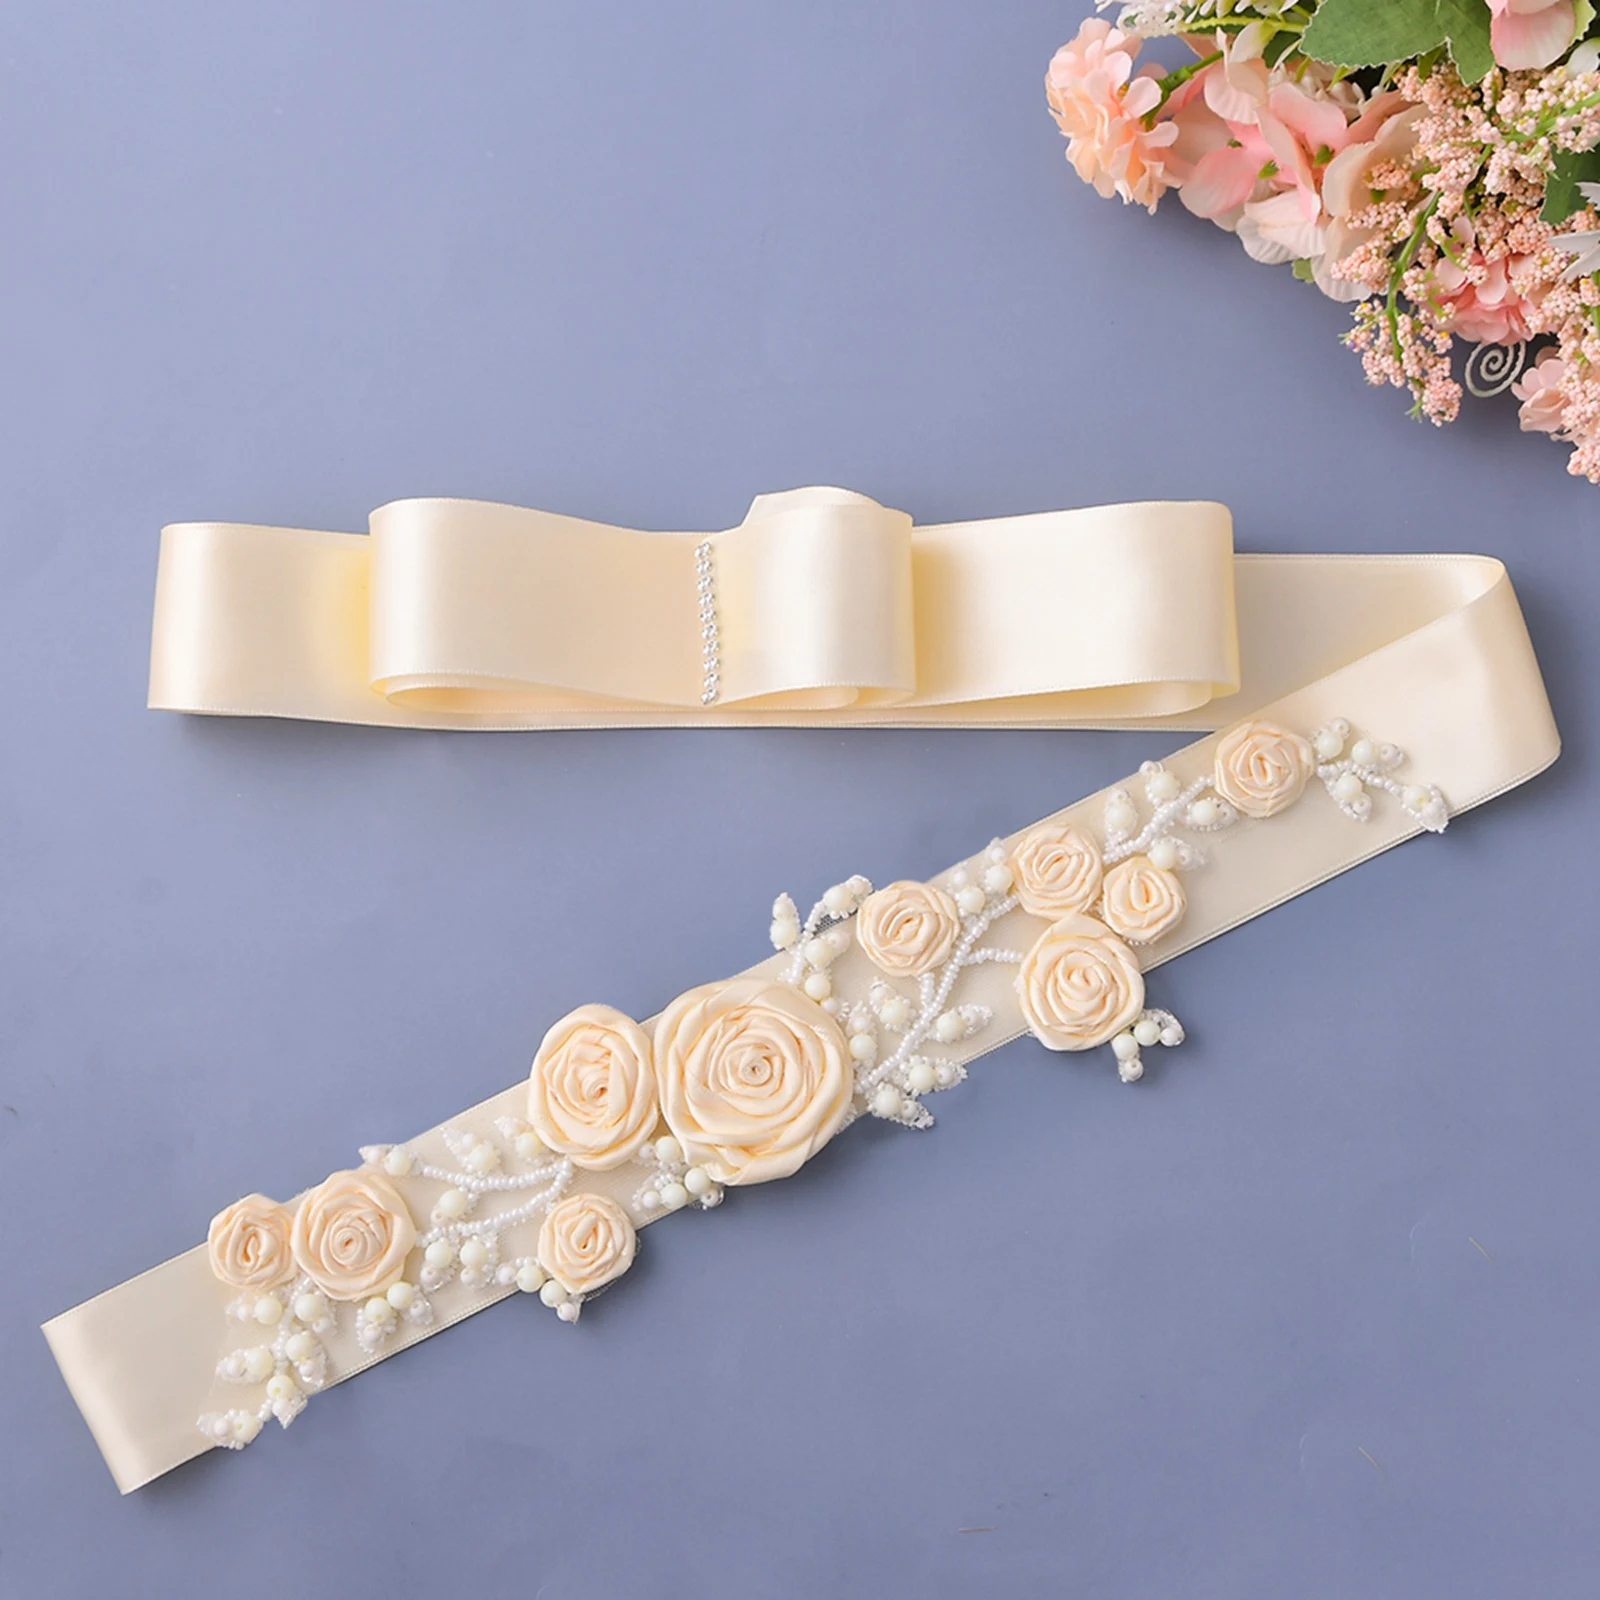 

TRiXY S323-I Ivory Belt for Wedding Dress Maternity Floral Bridal Belt Ivory Women Belt Rustic Bride Belt Rose Flower Pearl Sash